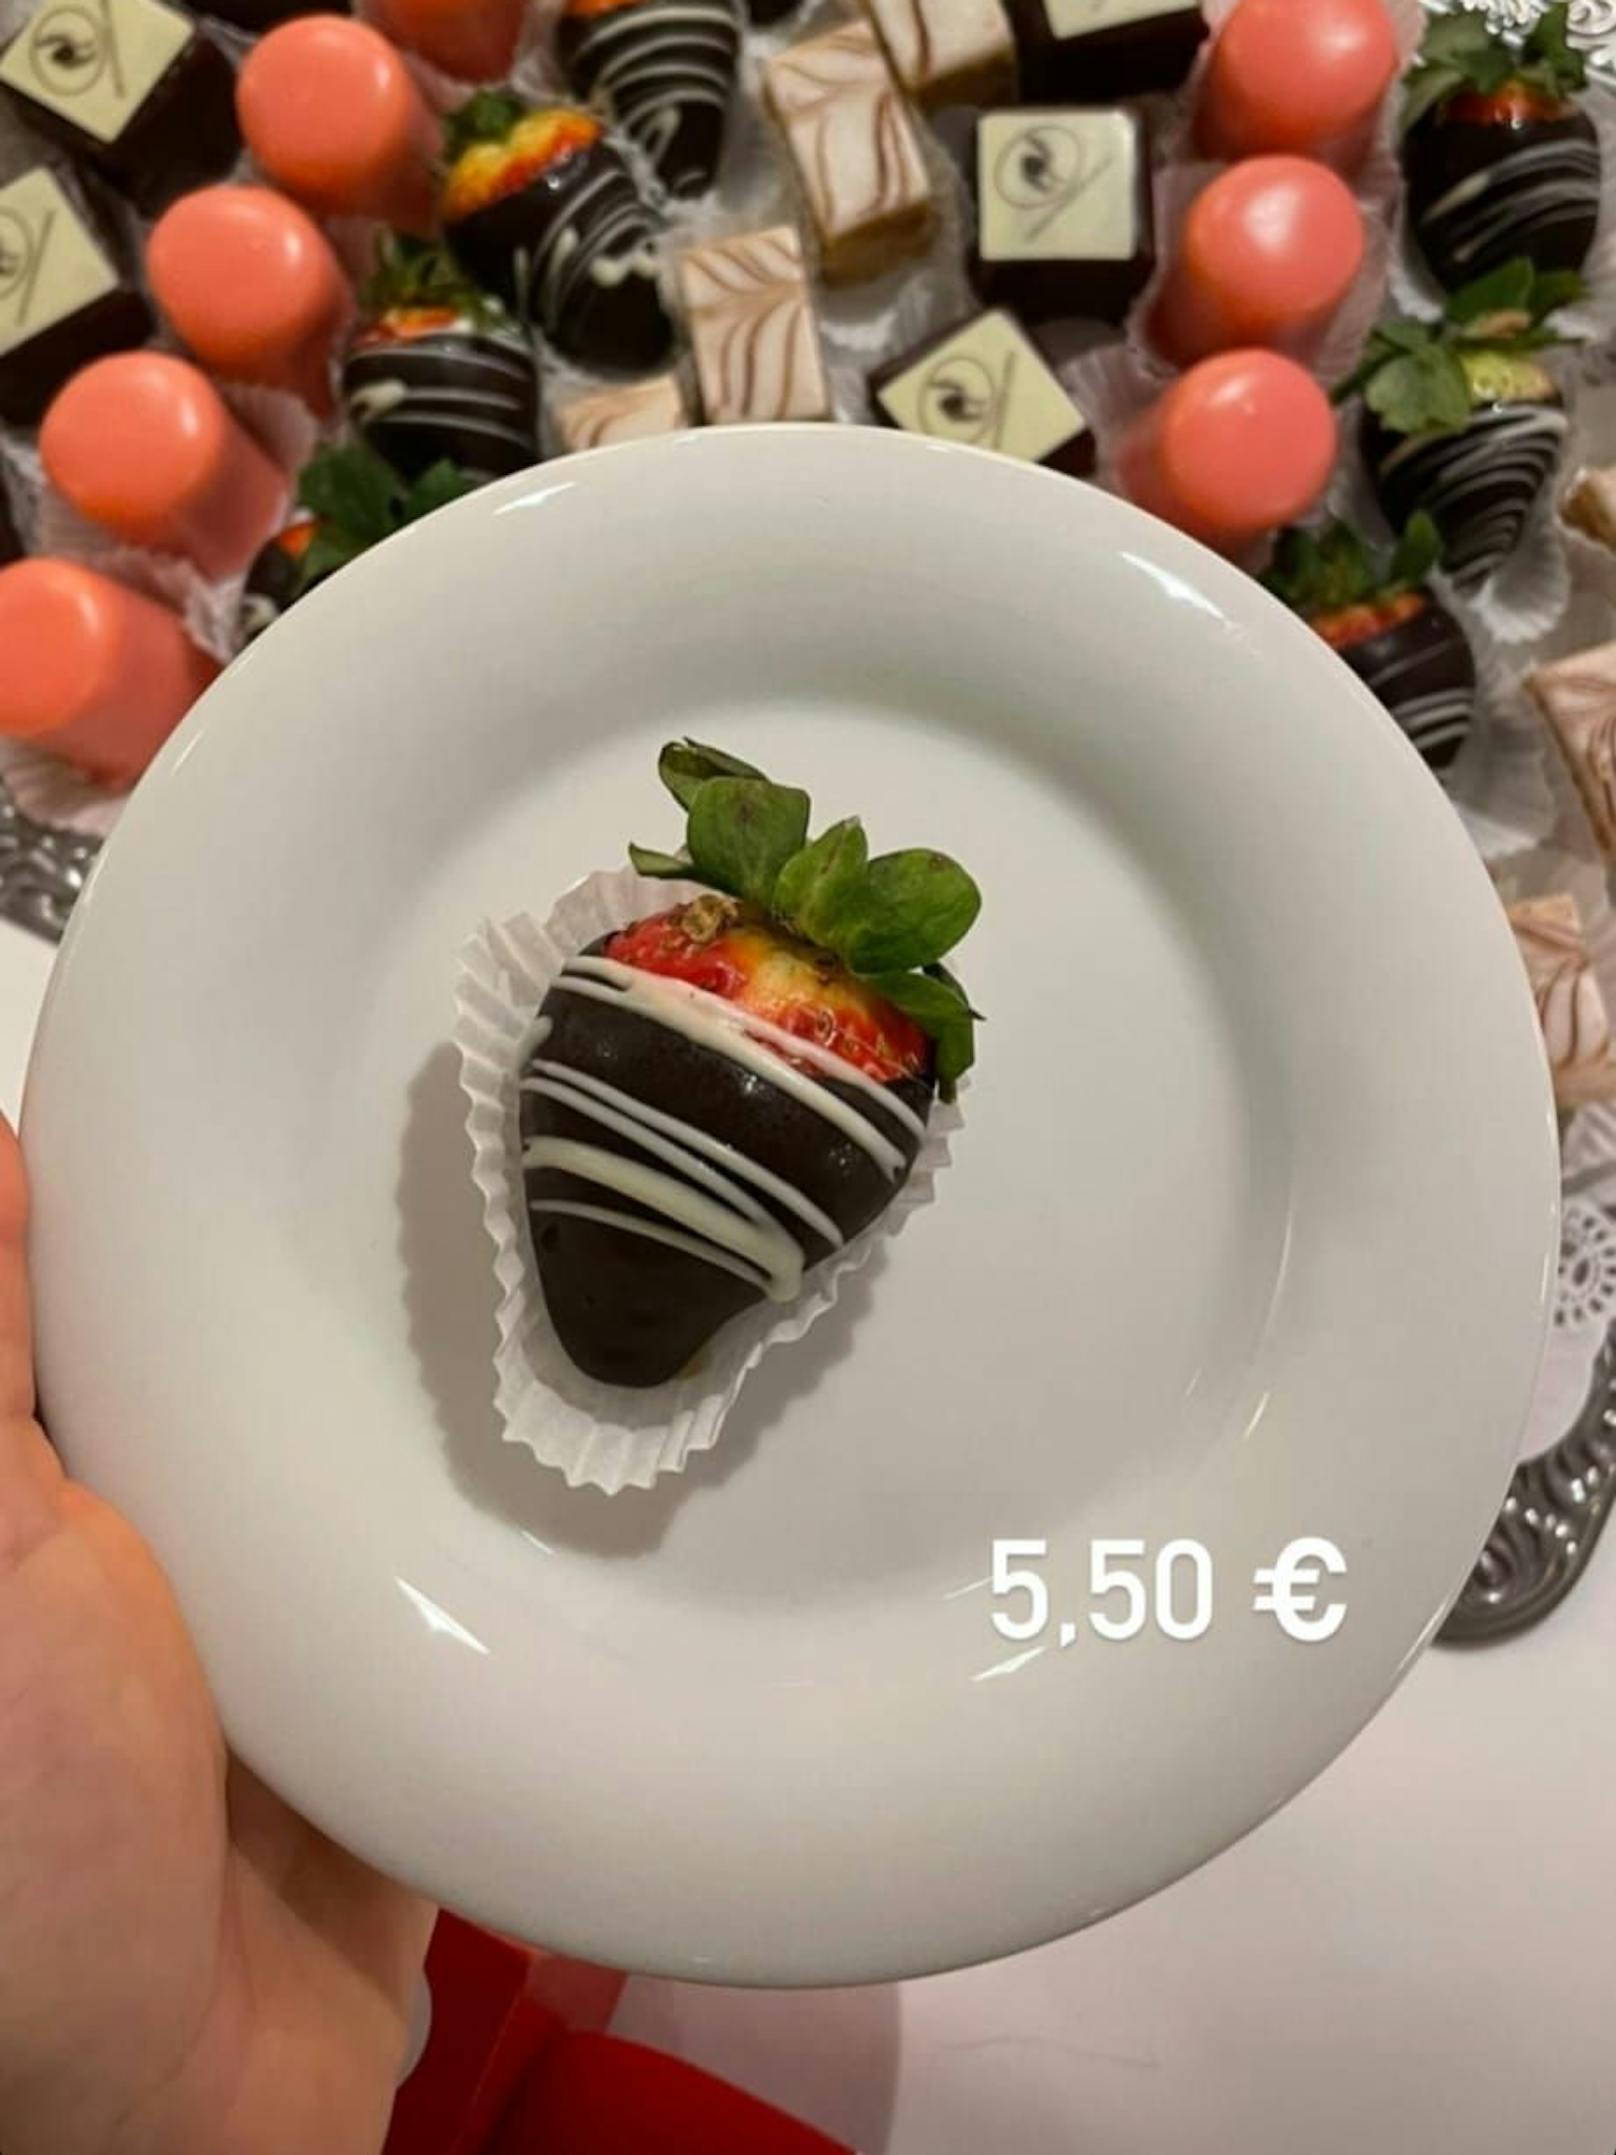 Die süße Versuchung kostet 5,50 Euro.